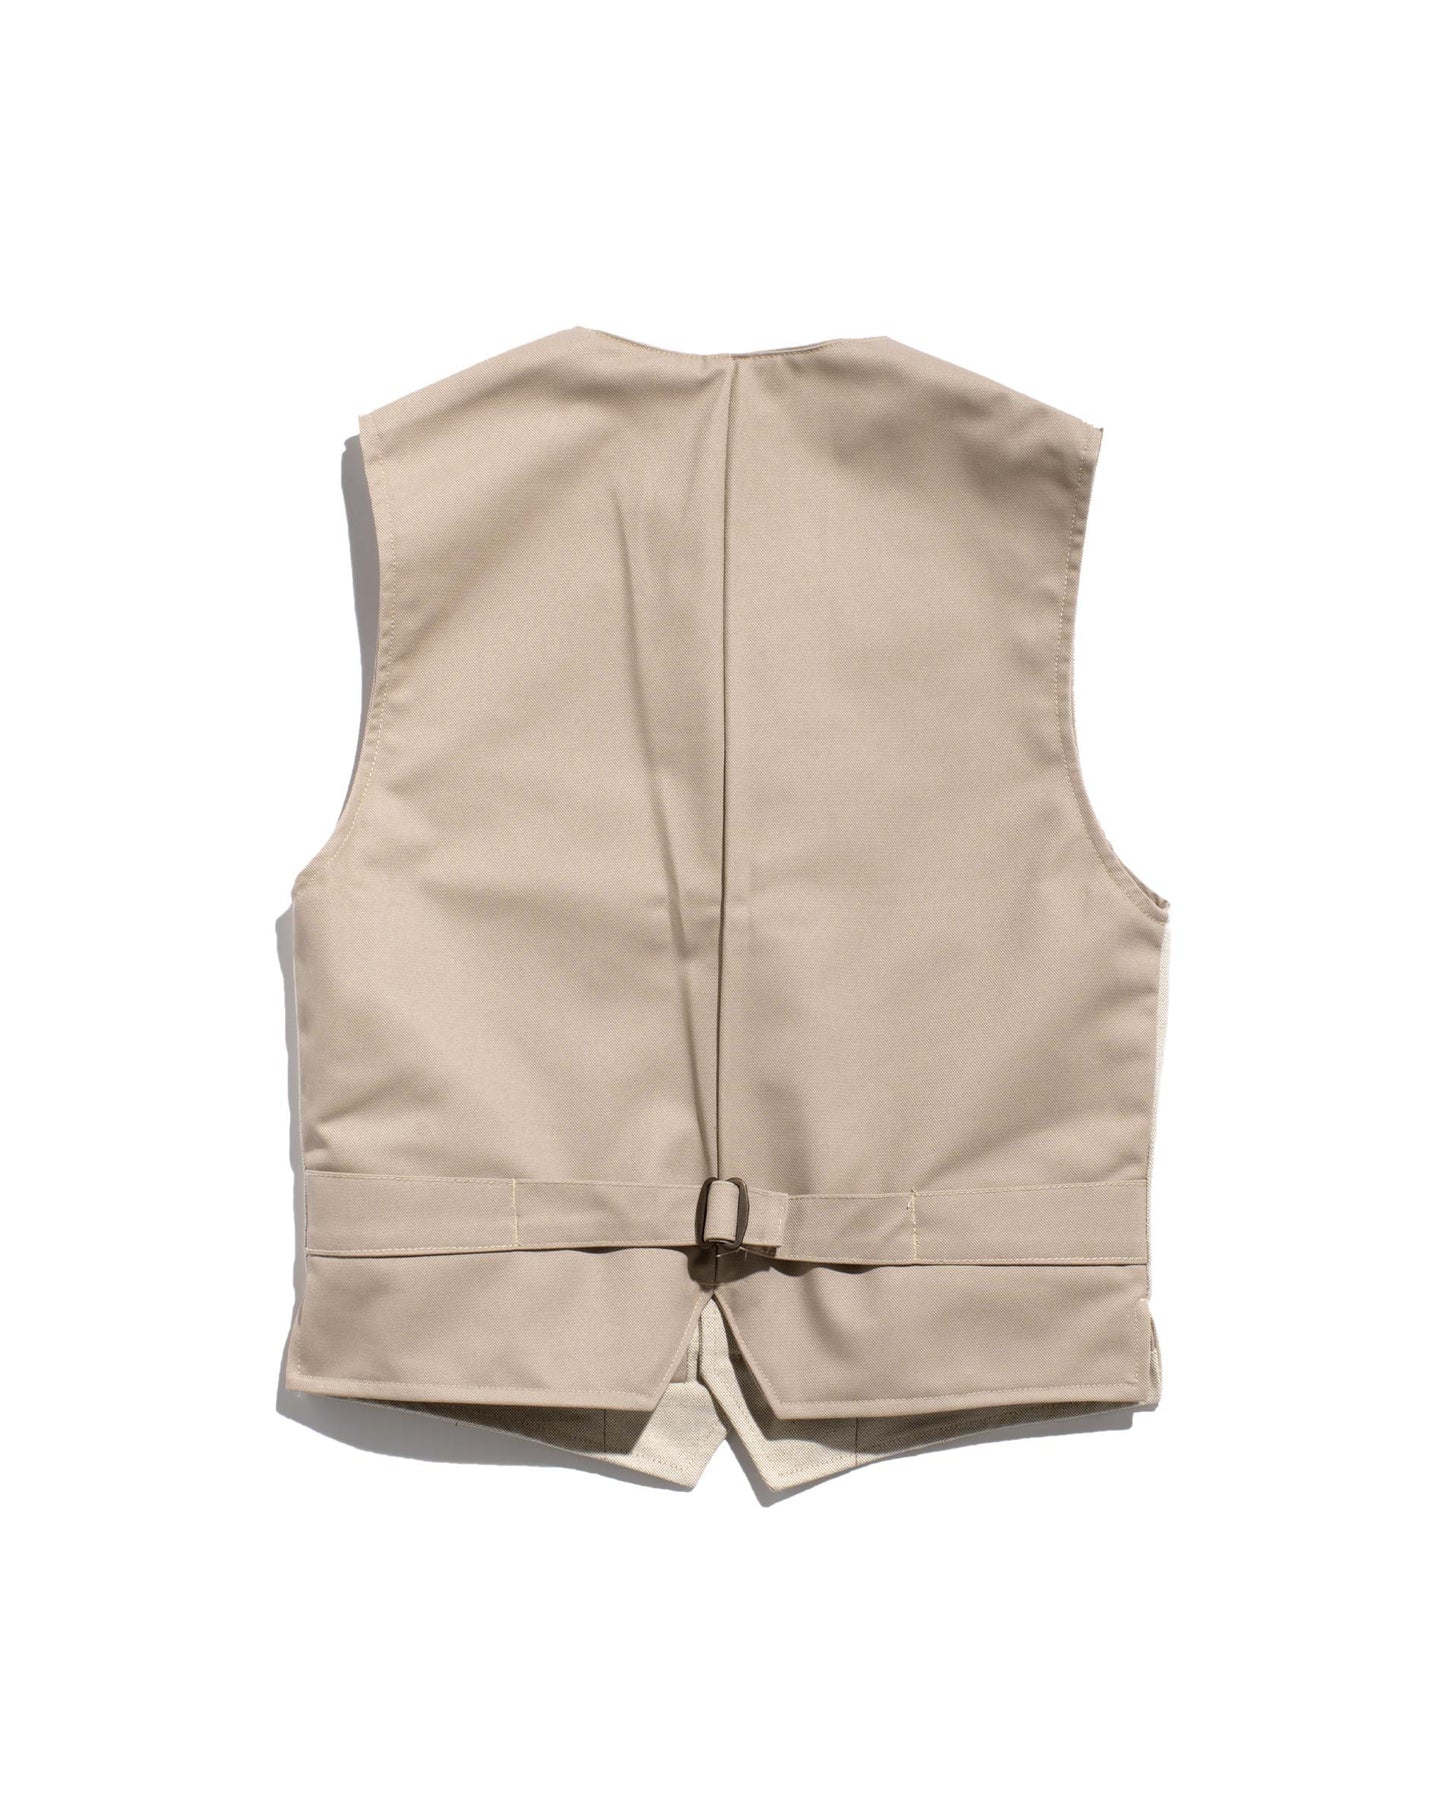 Le Laboureur vest in mixed linen/ecru cotton